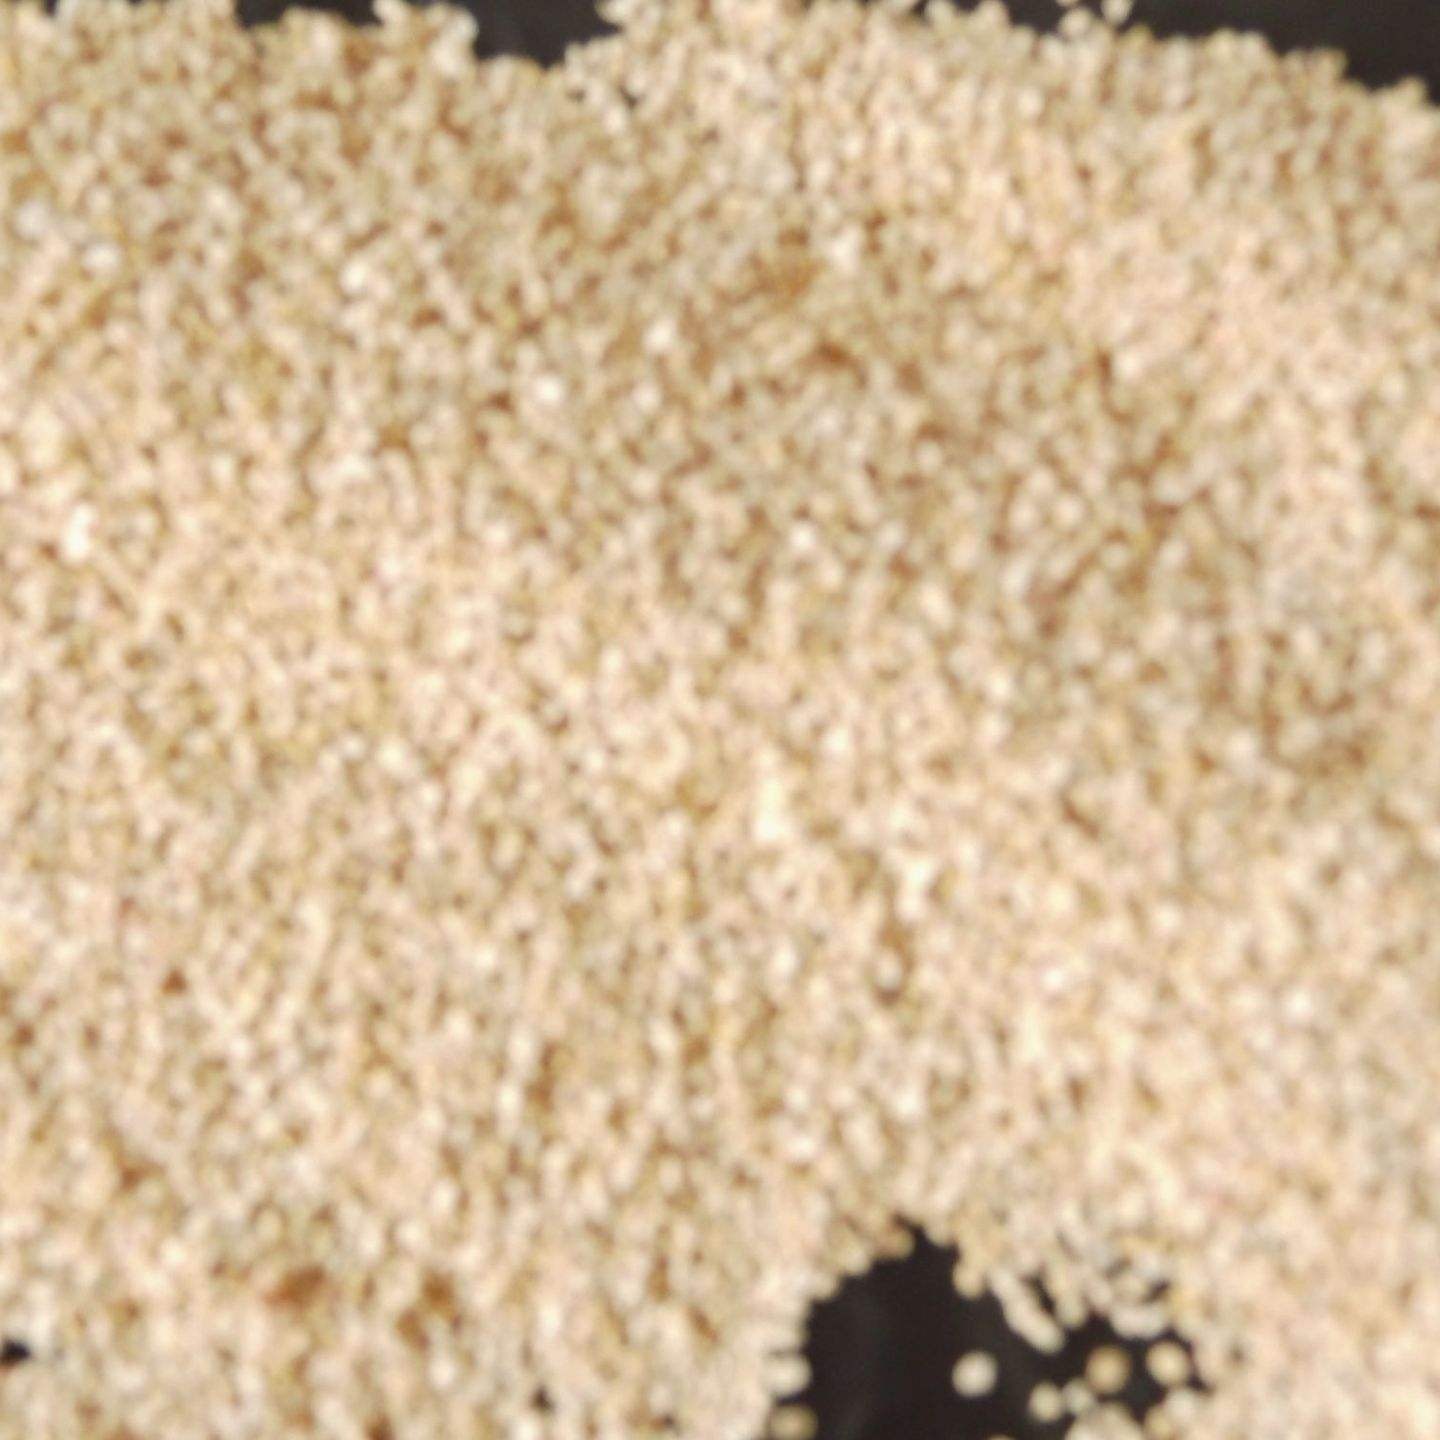 通化玉米芯磨料 干燥设备用优质玉米芯磨料 坚固耐用玉米芯磨料详细说明 批发与零售价格